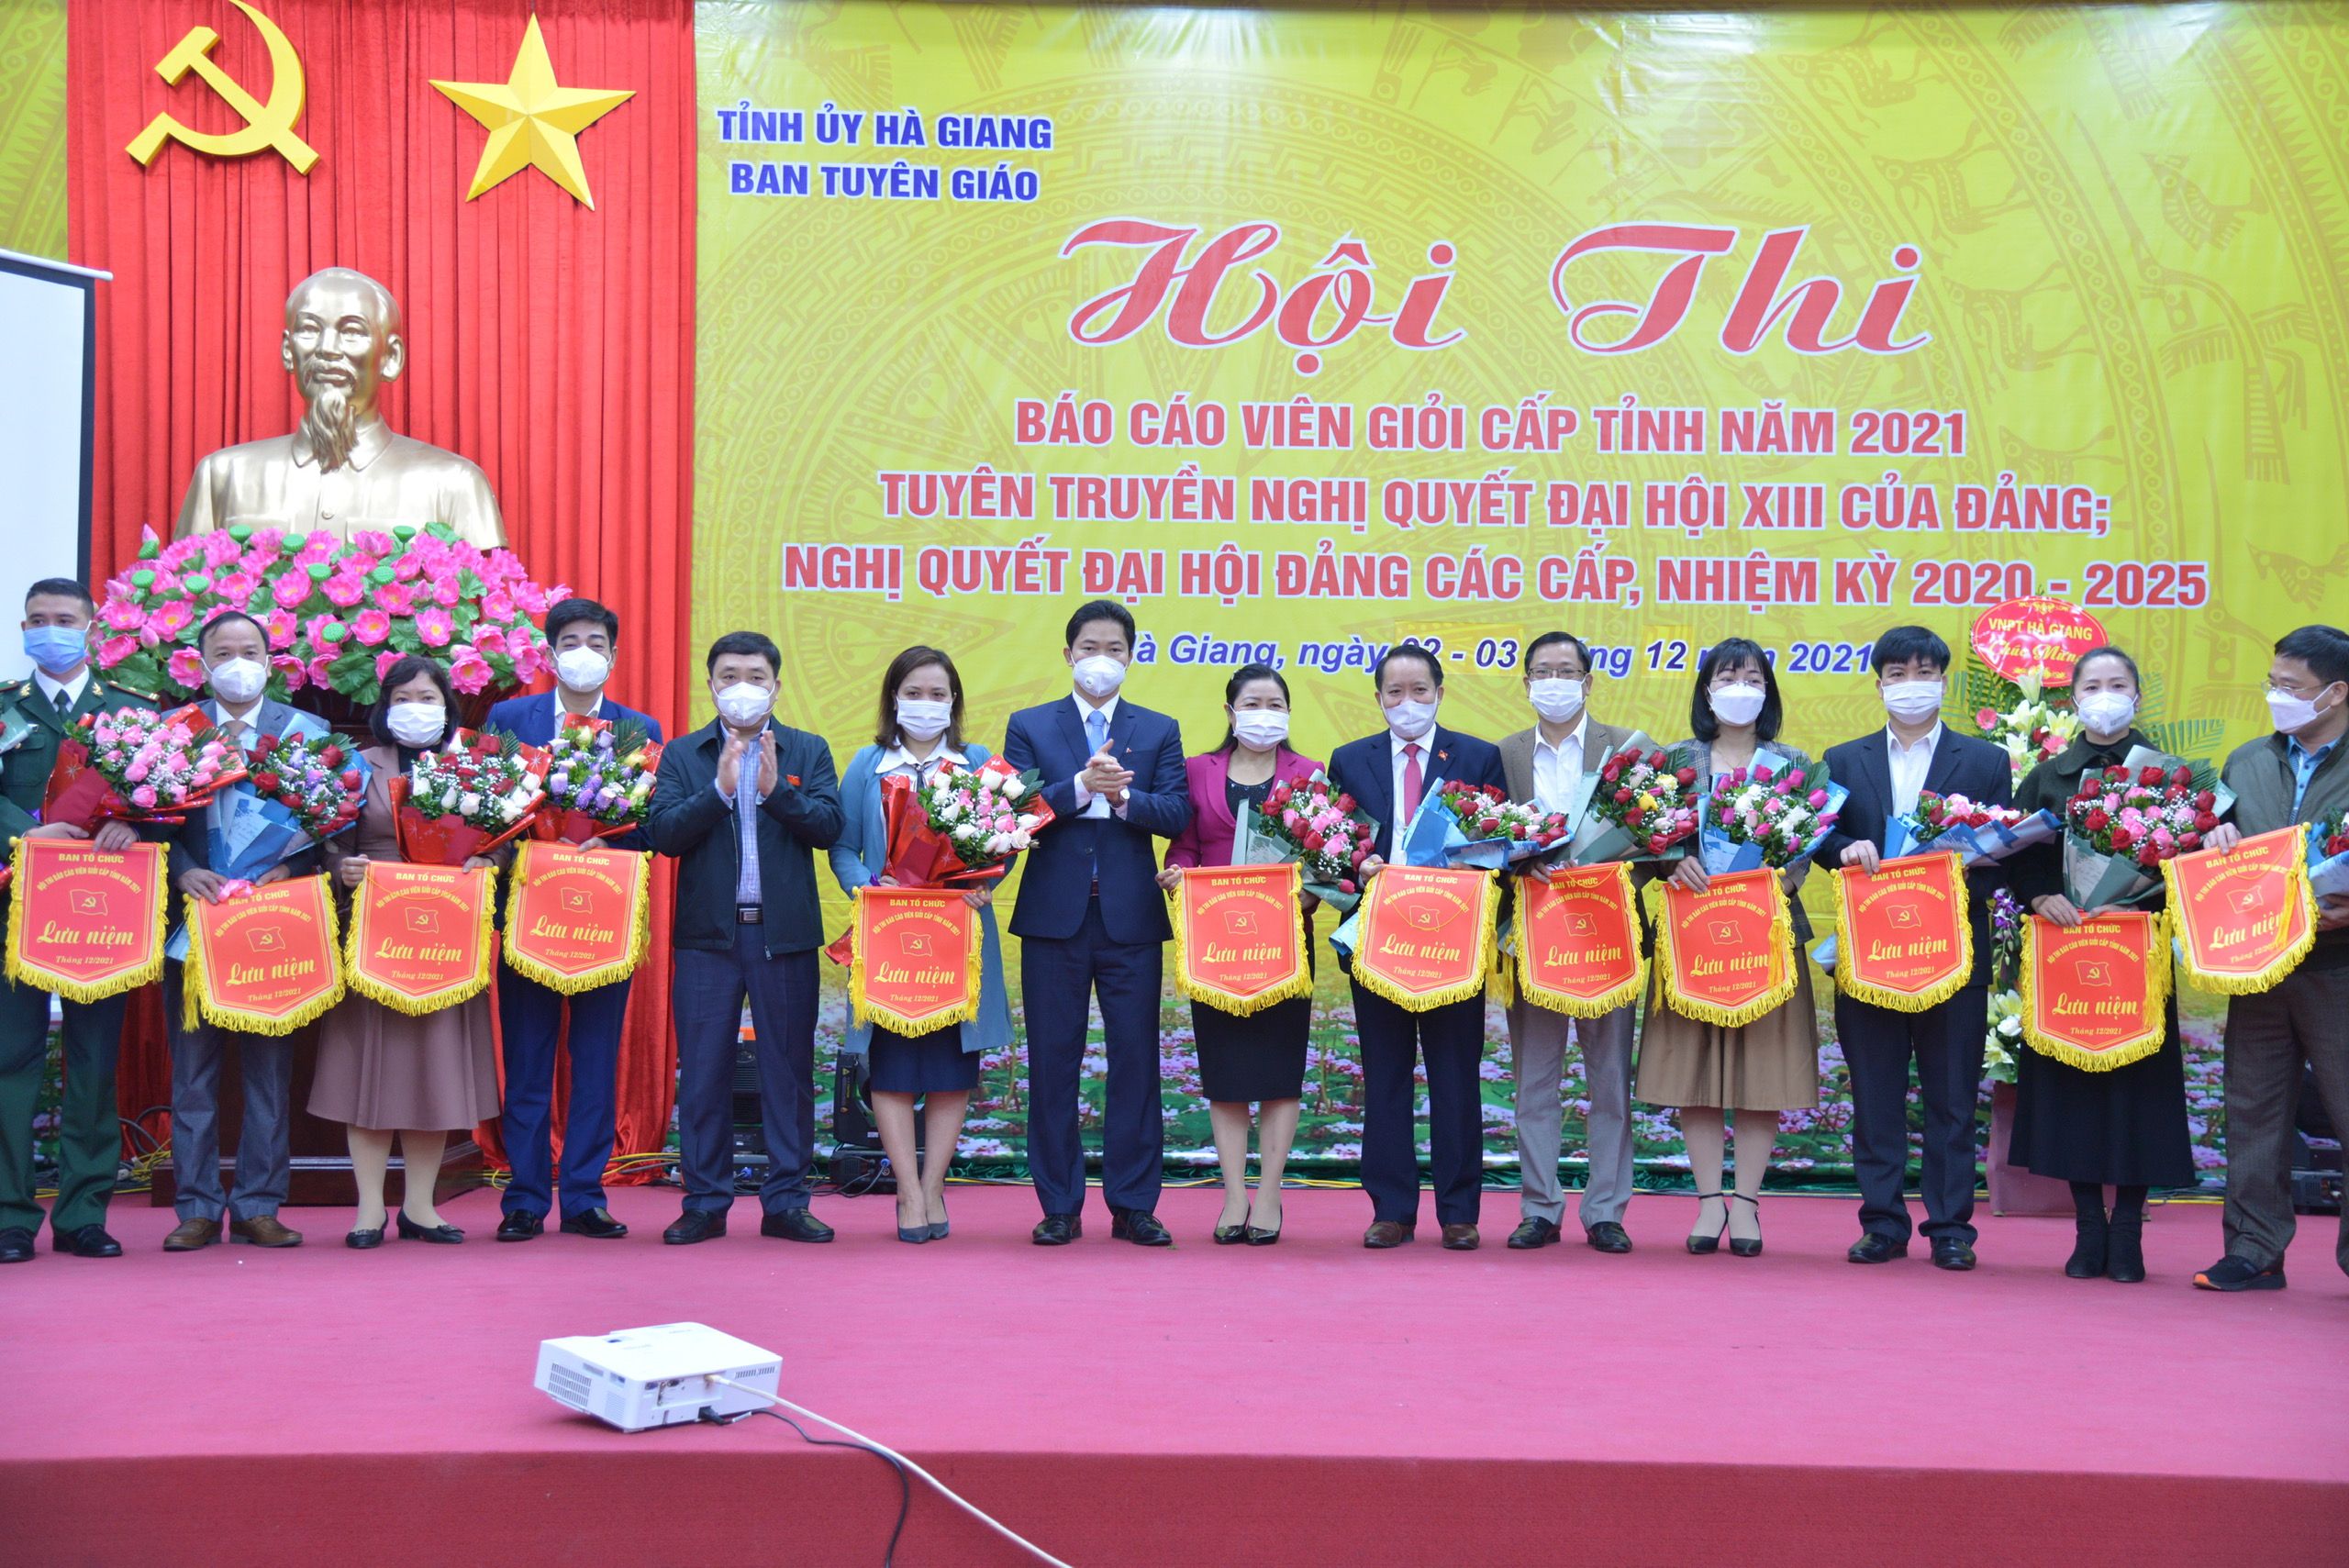 Hà Giang: 25 thí sinh tham dự Hội thi báo cáo viên giỏi cấp tỉnh năm 2021